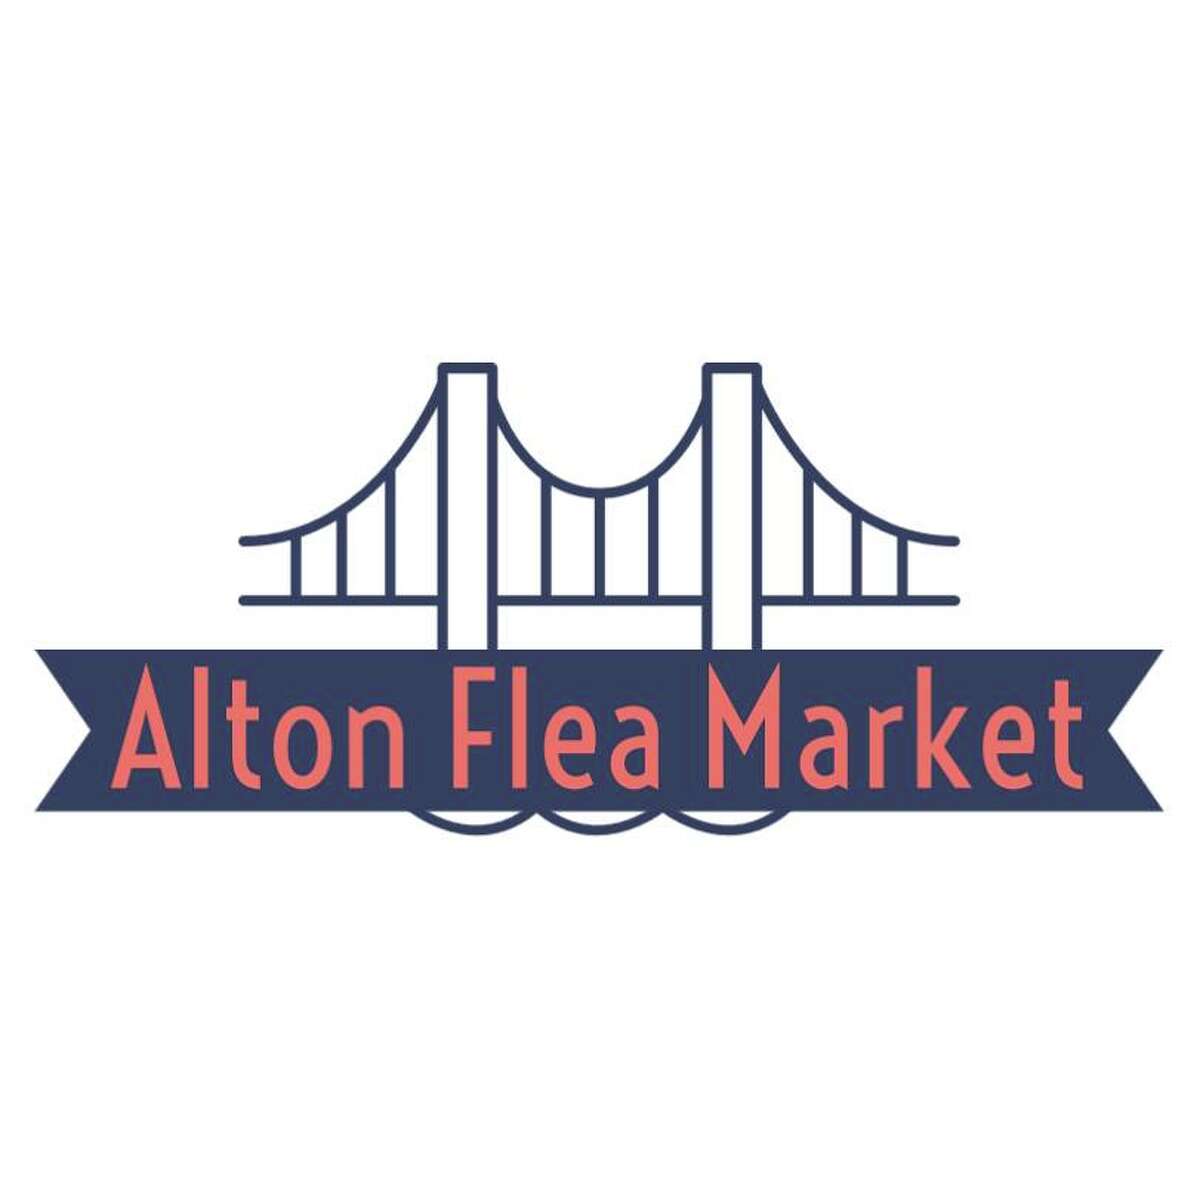 The Alton Flea Market at 711 Belle St. will open Saturday, April 2.